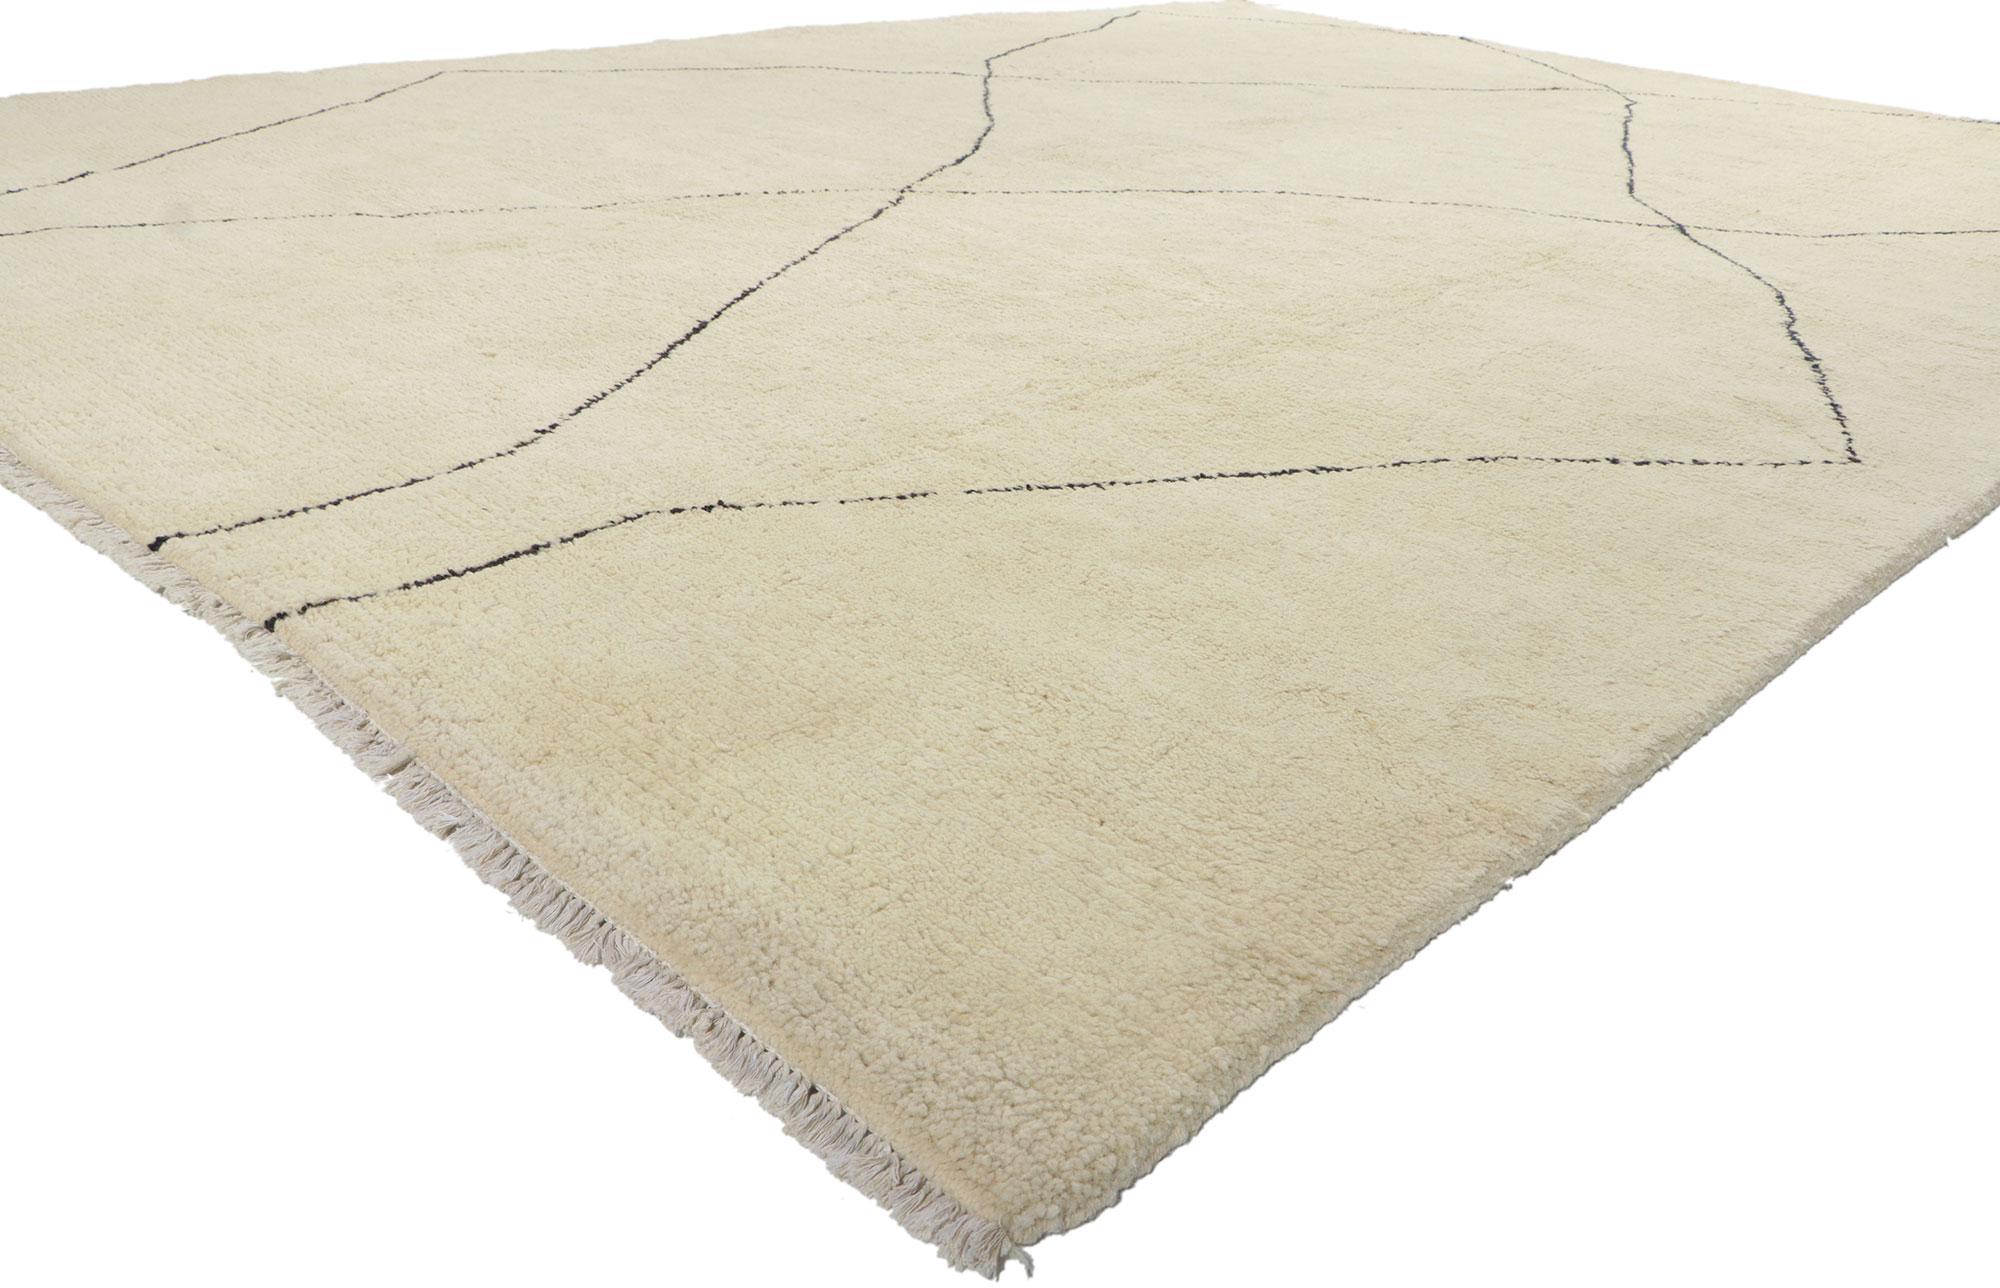 80577 New Modern Moroccan Area Rug, 10'01 x 13'09.
Ce tapis de style marocain en laine nouée à la main est une vision captivante de la beauté du tissage. Il dégage un style moderne avec des poils soyeux. Le design simpliste et le coloris neutre de